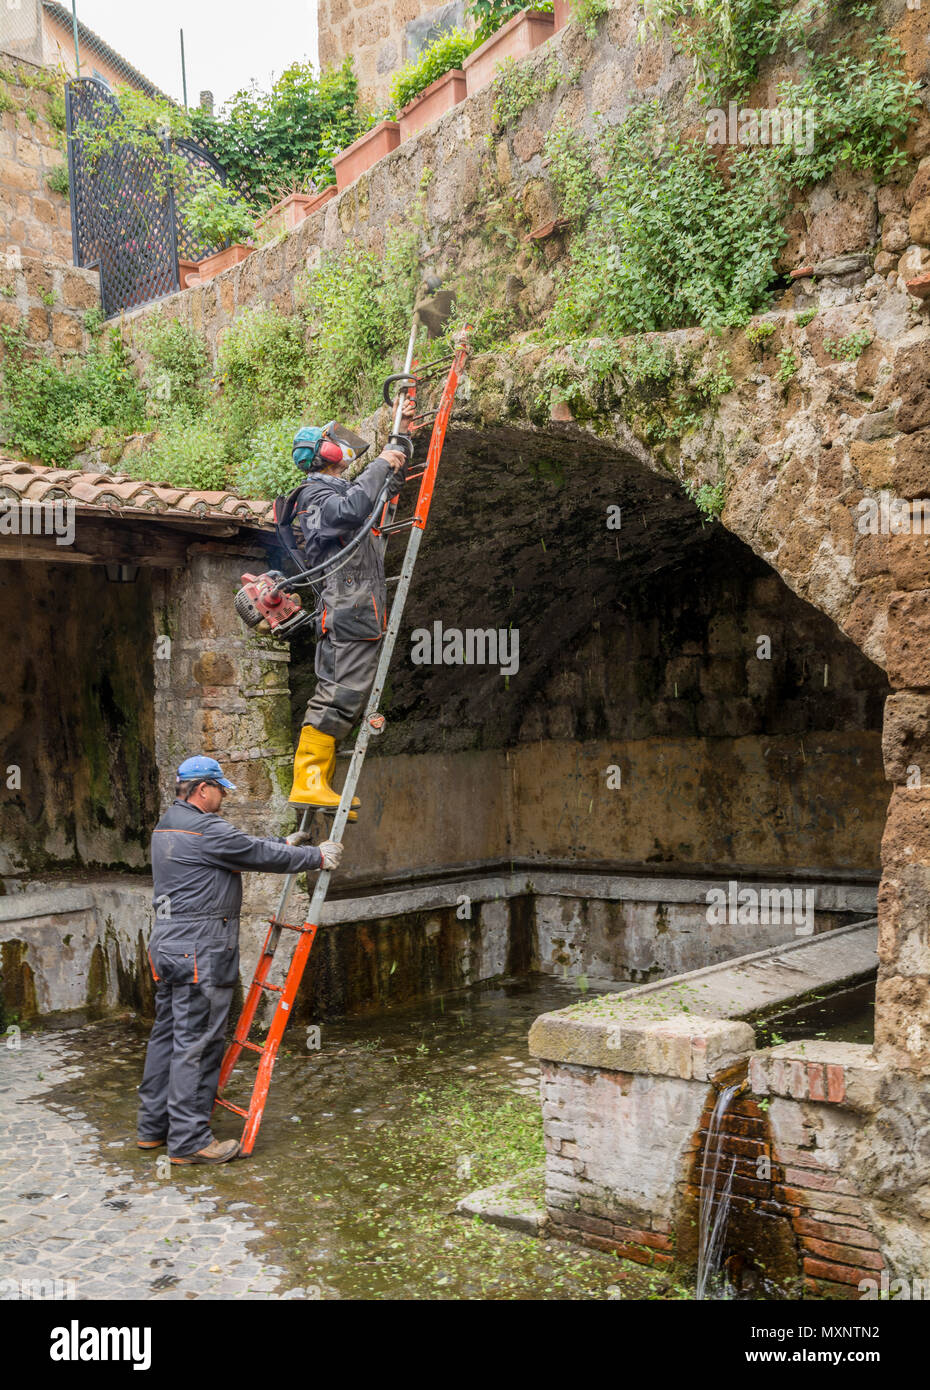 Tuscania (Viterbo), Italie - 2 mai 2018 : l'aide jardinier municipal strimmer dans un site archéologique à Sutri, italie Banque D'Images